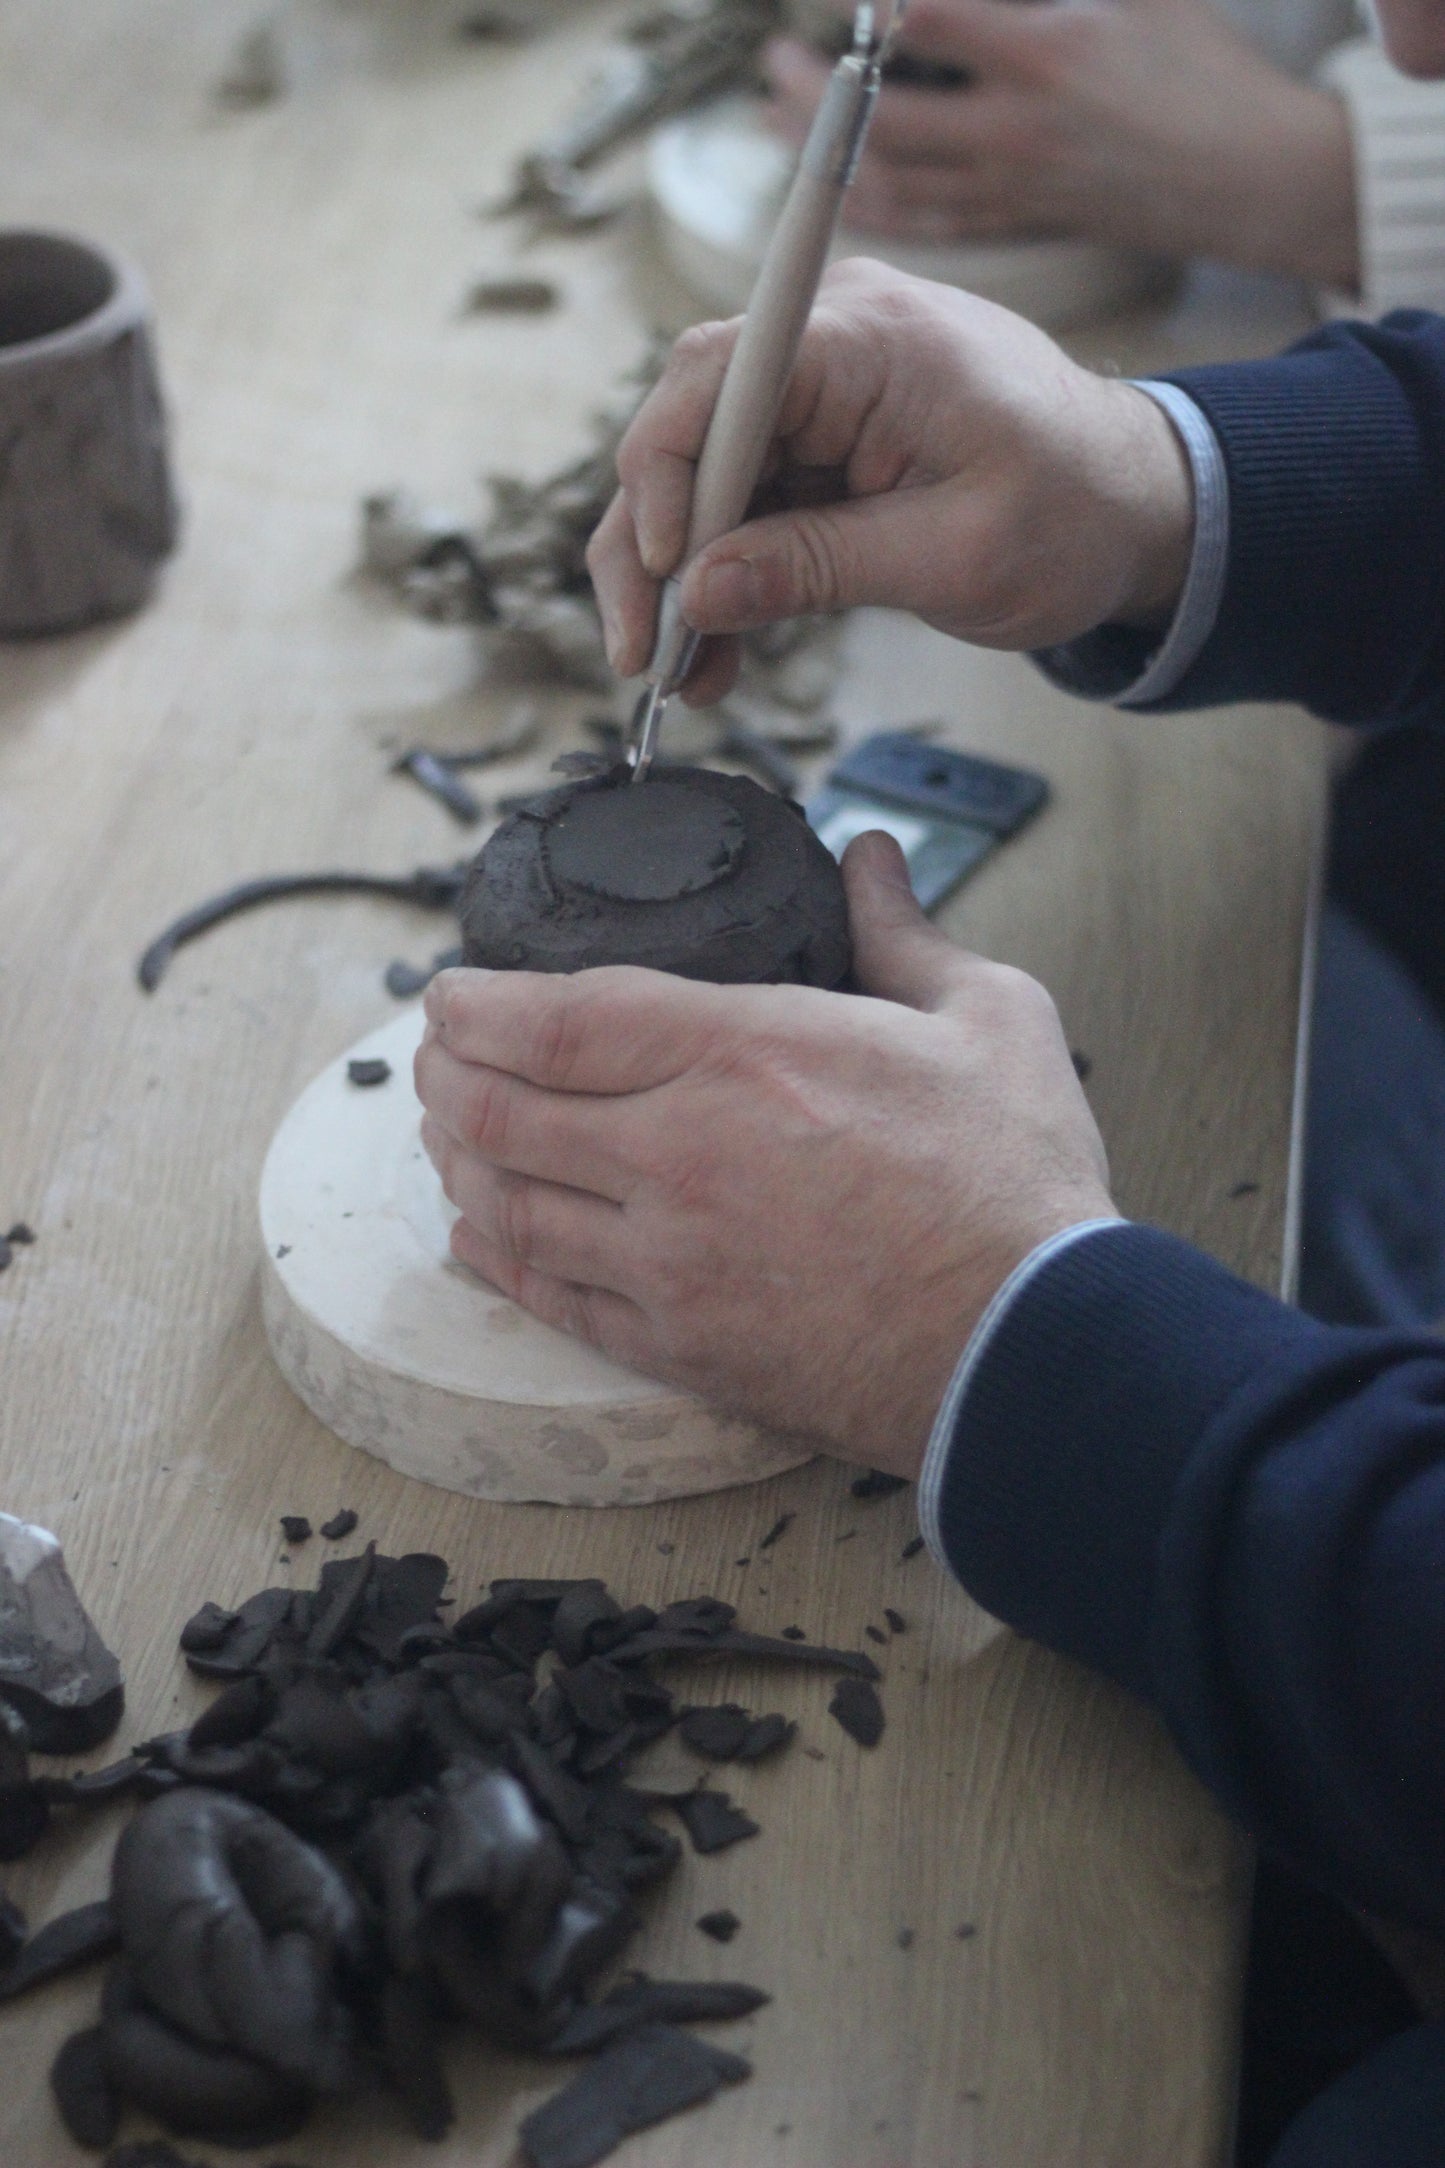 Kurinuki for Beginners - Carving a ceramic tea cup